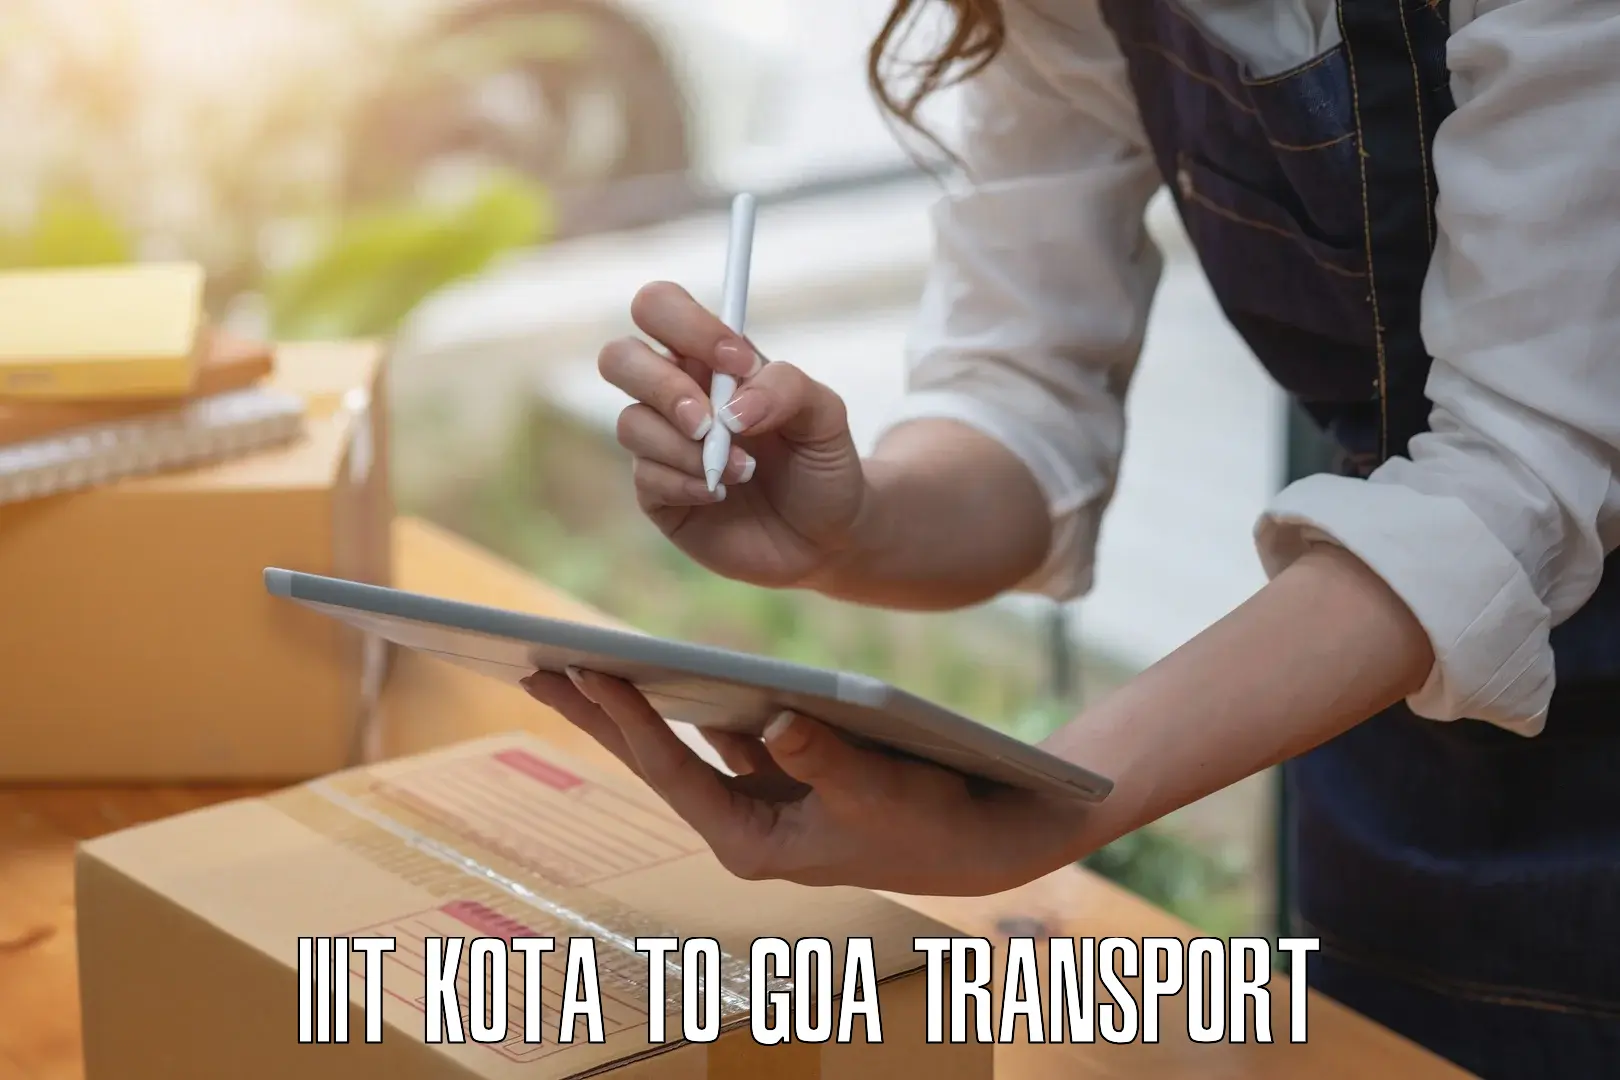 Intercity transport IIIT Kota to IIT Goa